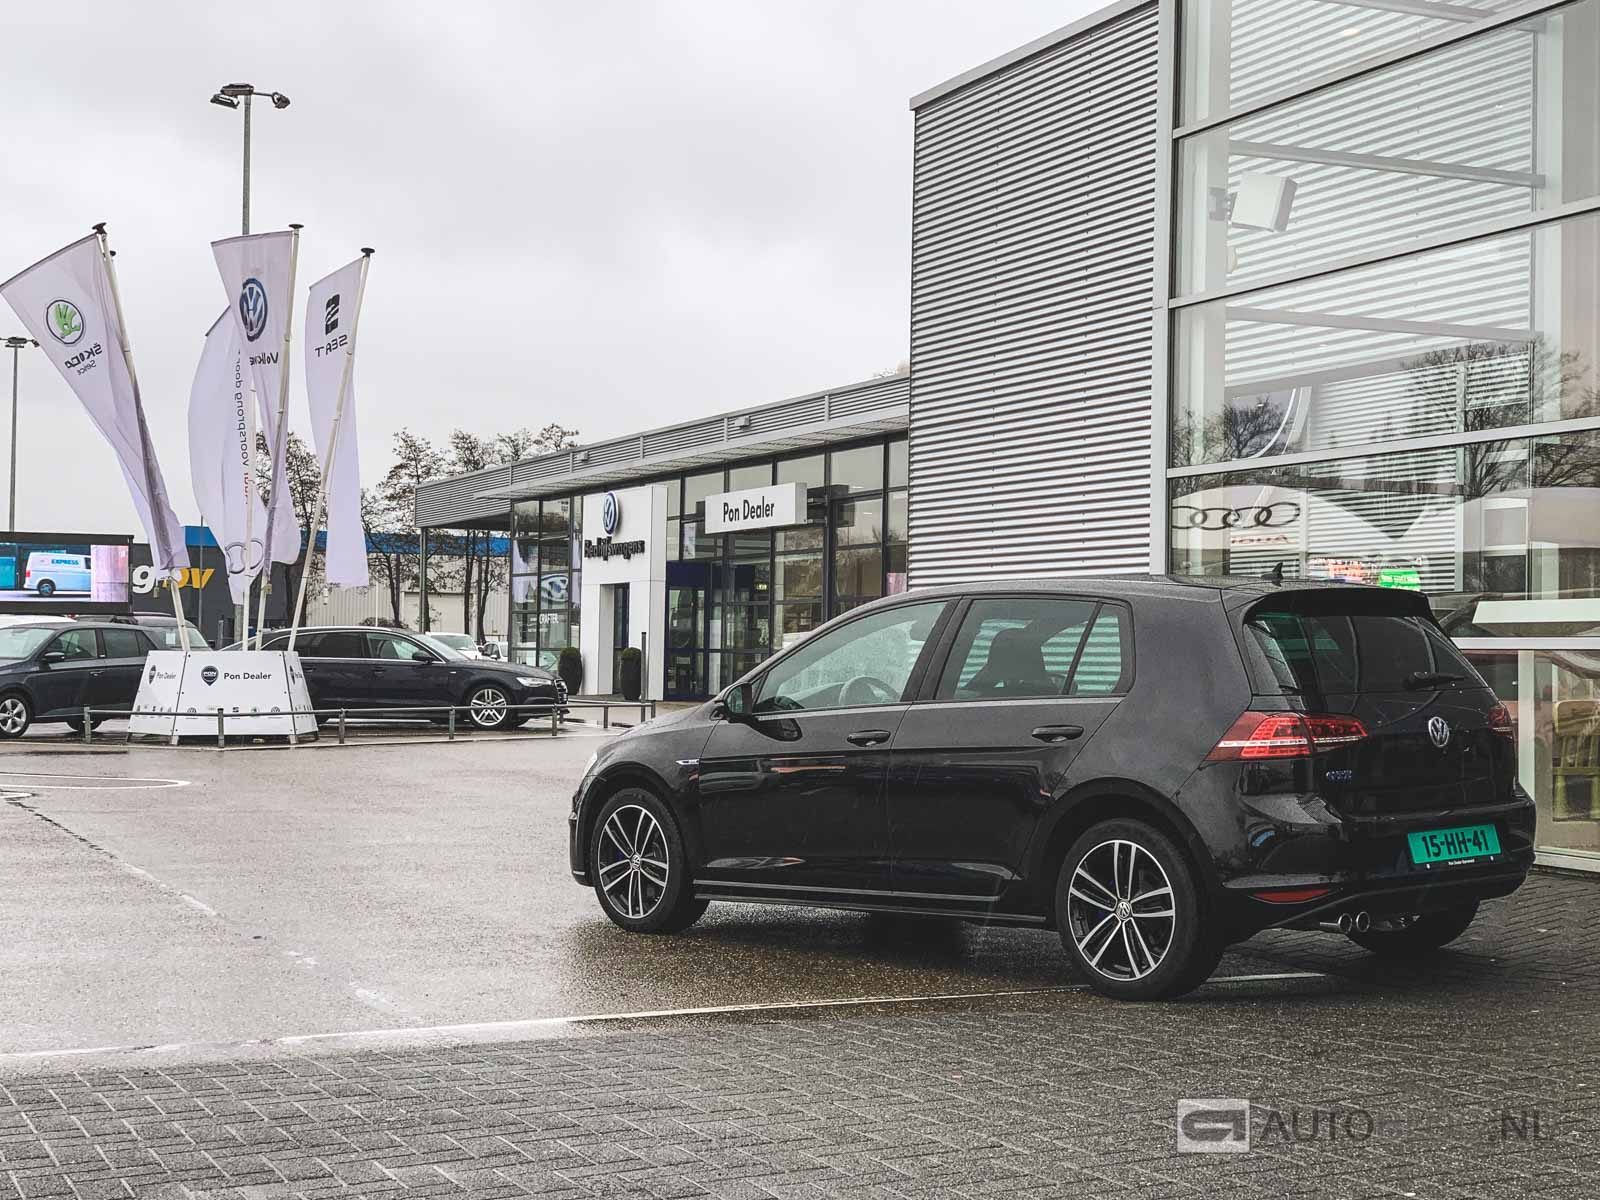 Oorzaak Land oosten Volkswagen Golf GTE occasion aankoopadvies en video - Autoblog.nl